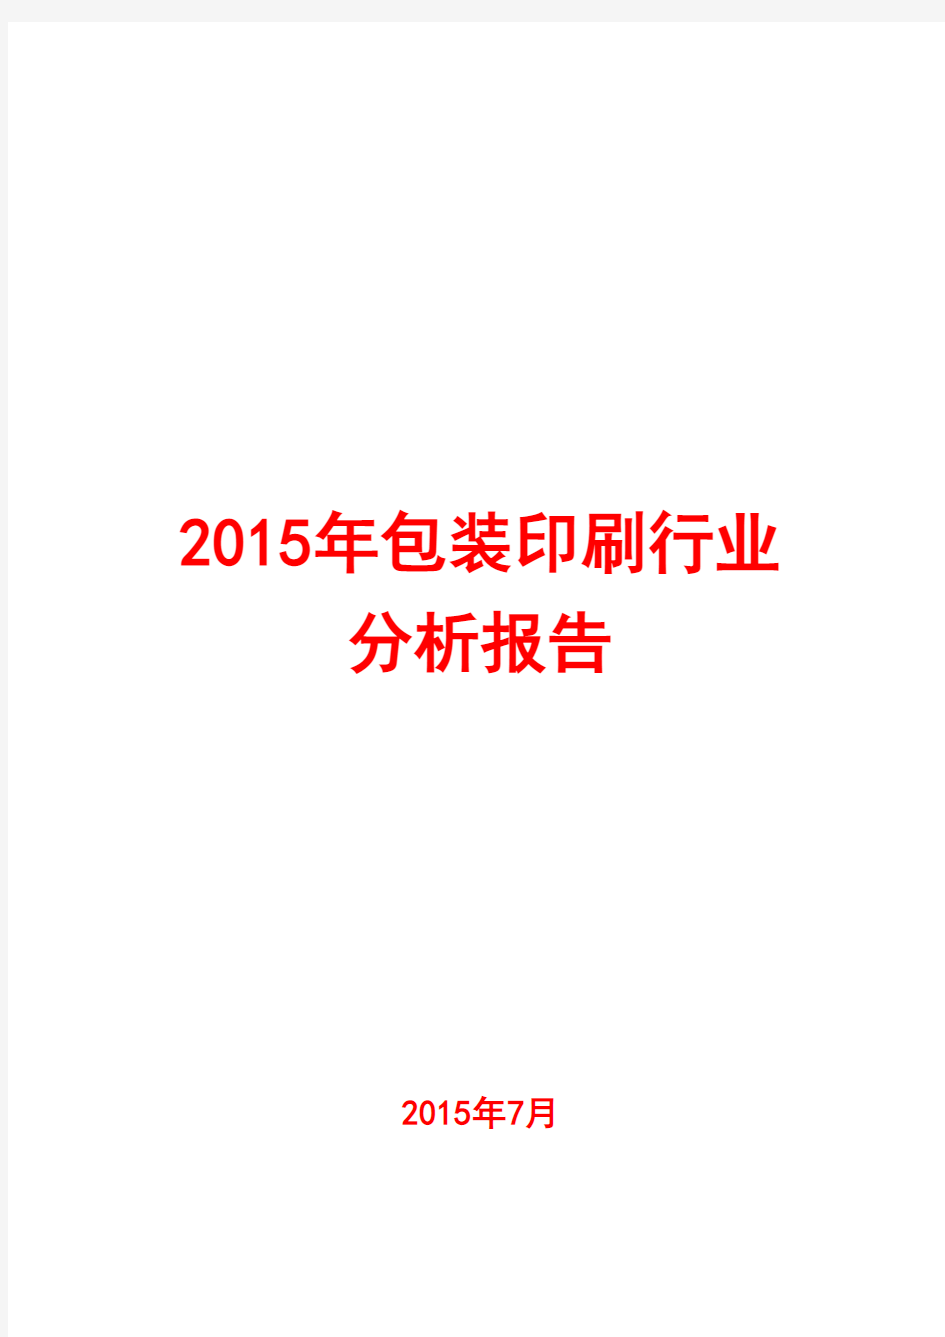 2015年包装印刷行业分析报告